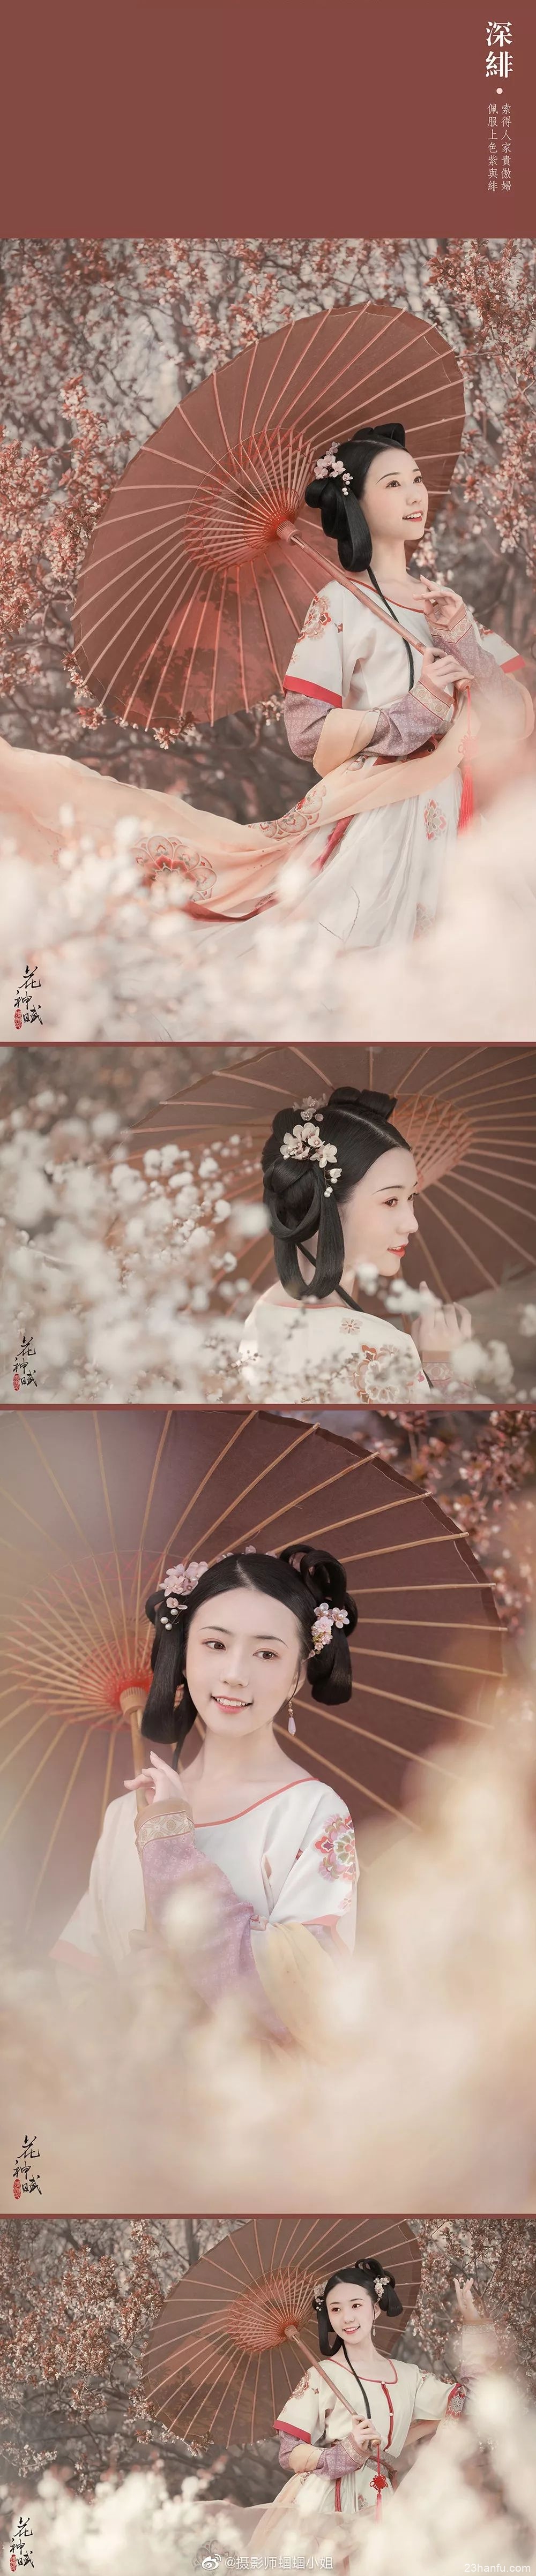 【汉服摄影】十位汉服美人演绎最美中国色